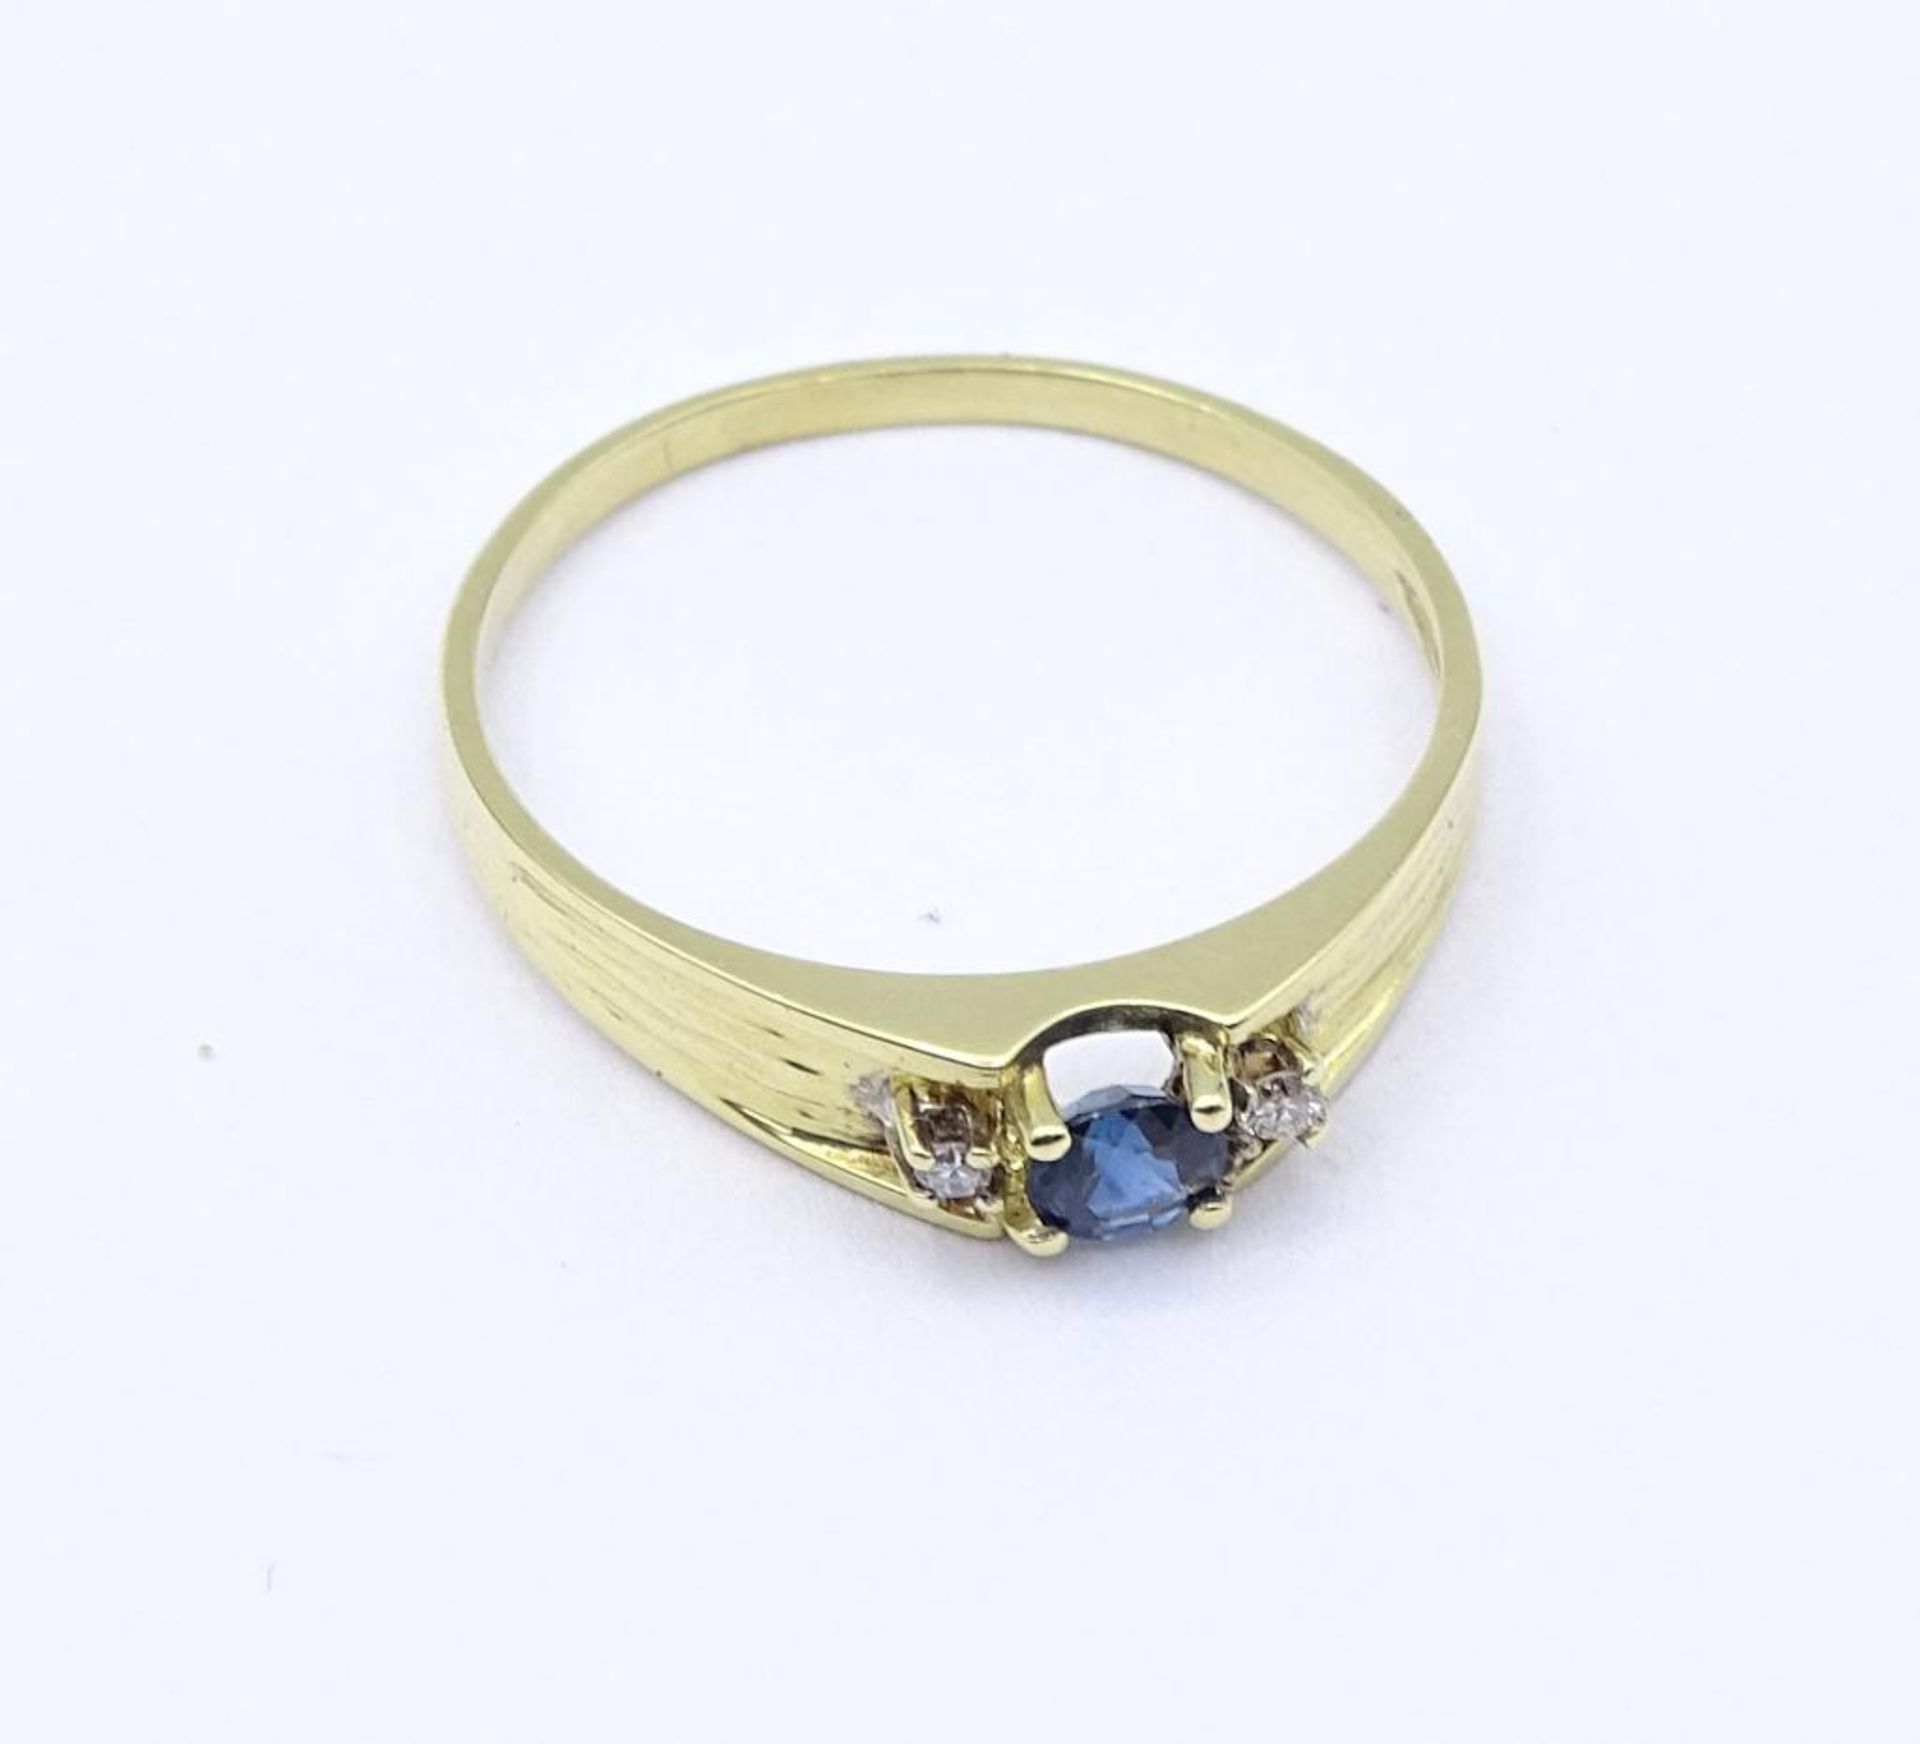 Saphir-Diamant-Ring mit einem rund fac. Saphir 3,7 mm und 2 Diamanten, zus. 0,02 ct W/SI, RG 55, 2,0 - Bild 4 aus 4